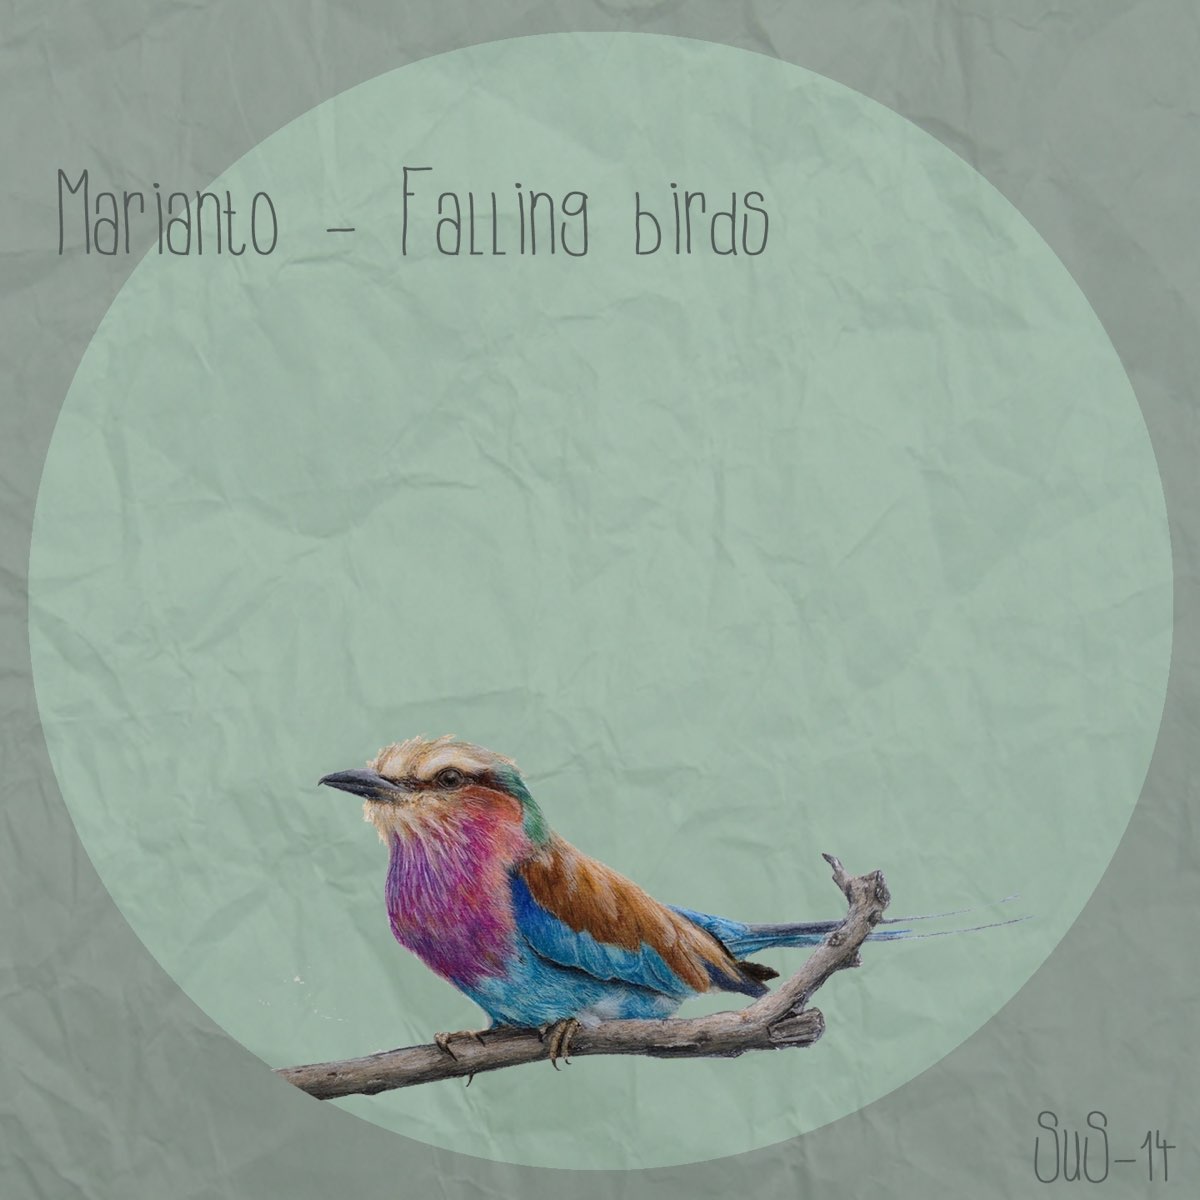 Fall bird. Fallen Bird Prince Canary. Birds text Creative.